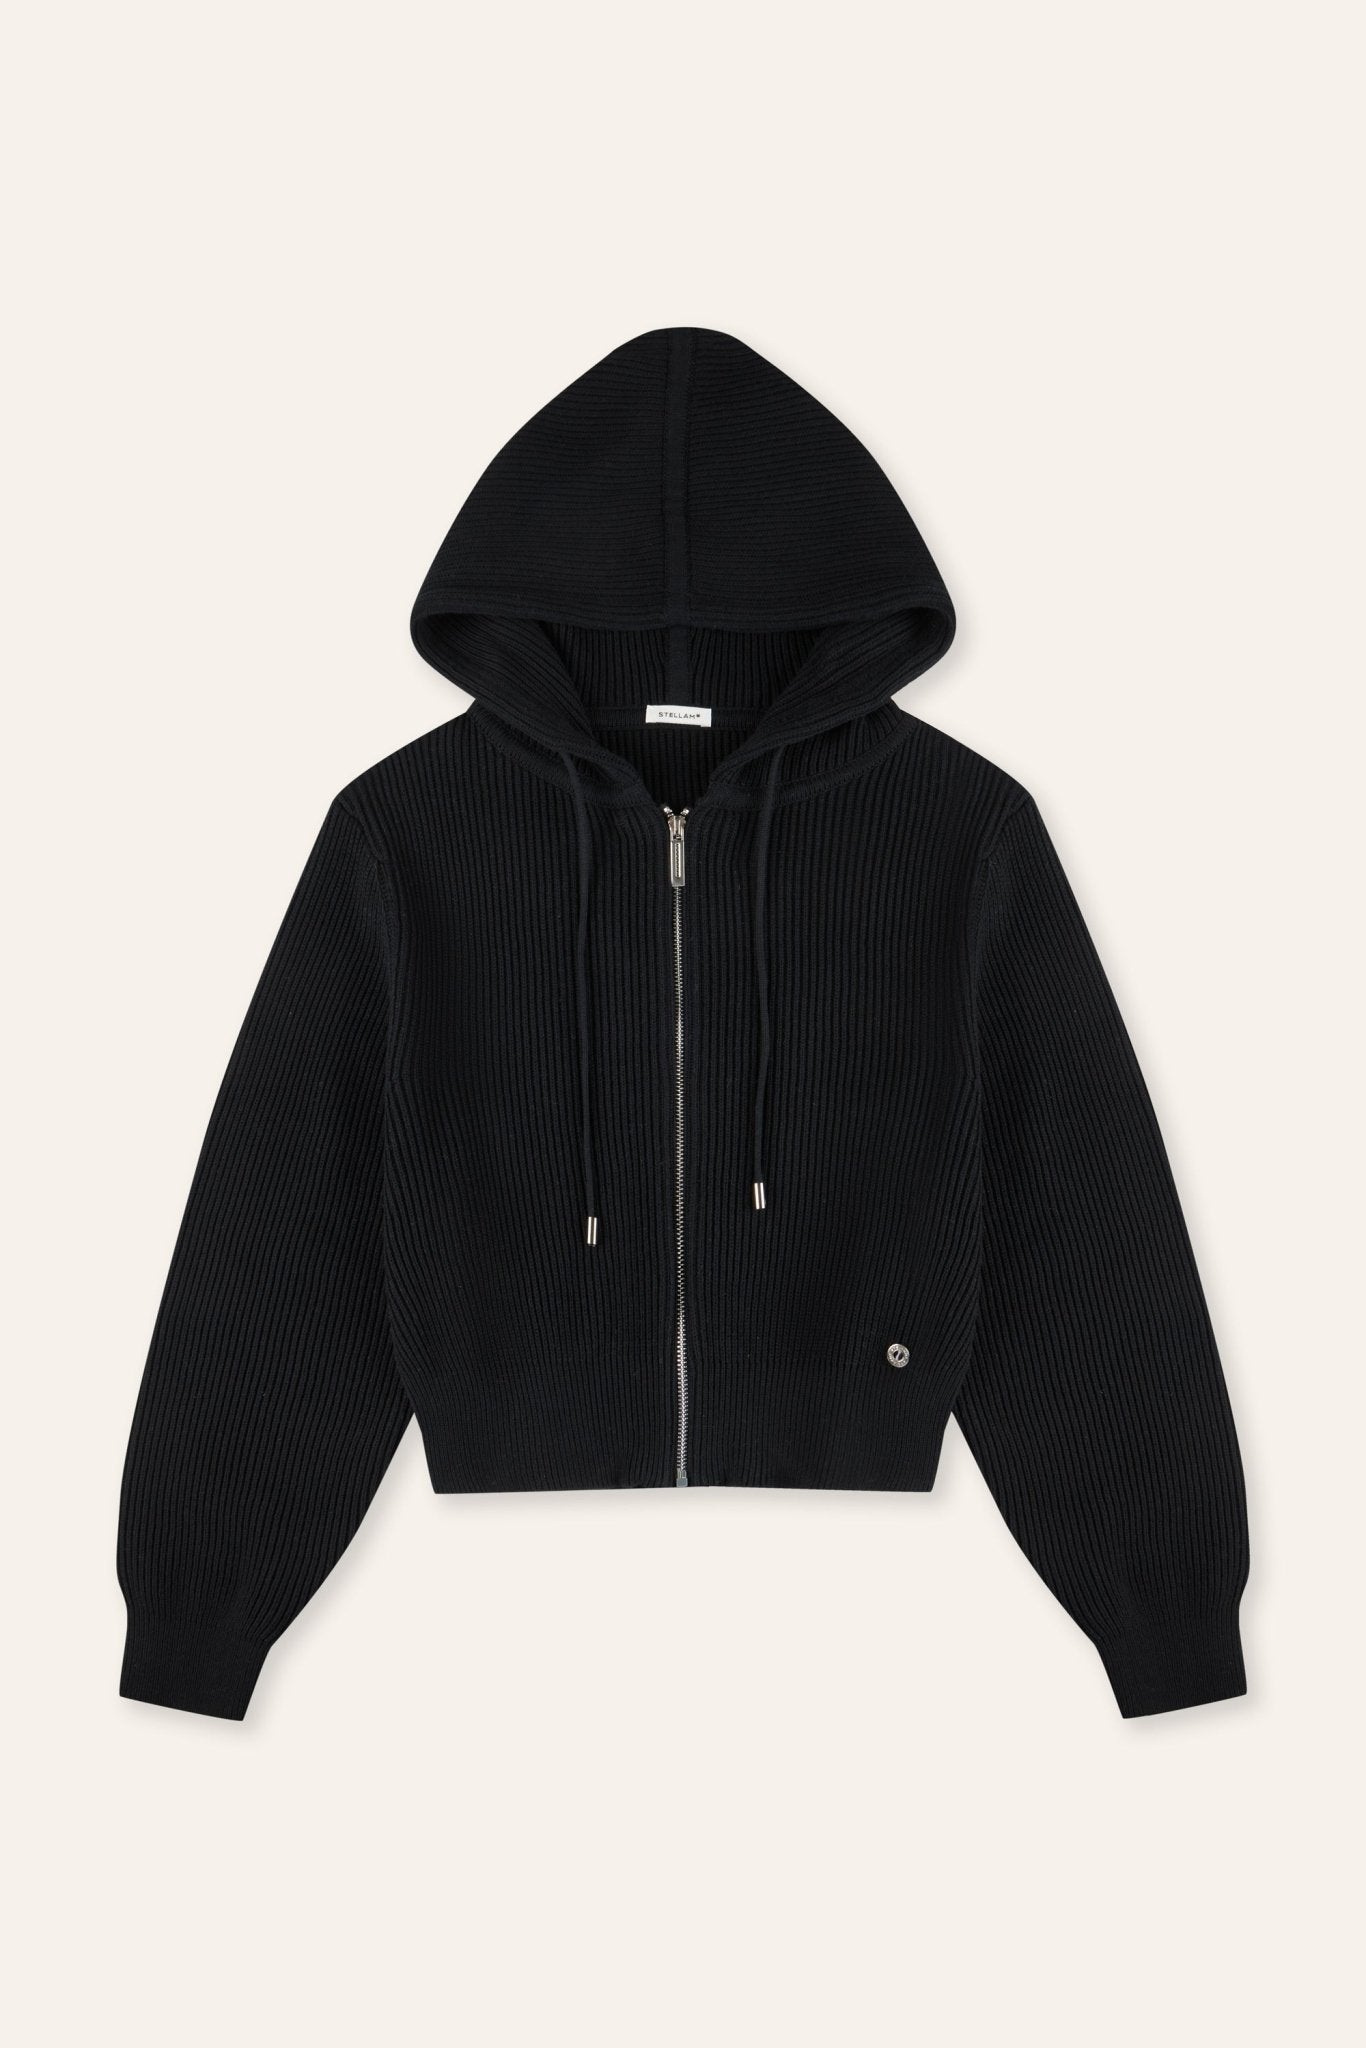 HOODIE cotton zip jacket (Black) - STELLAM